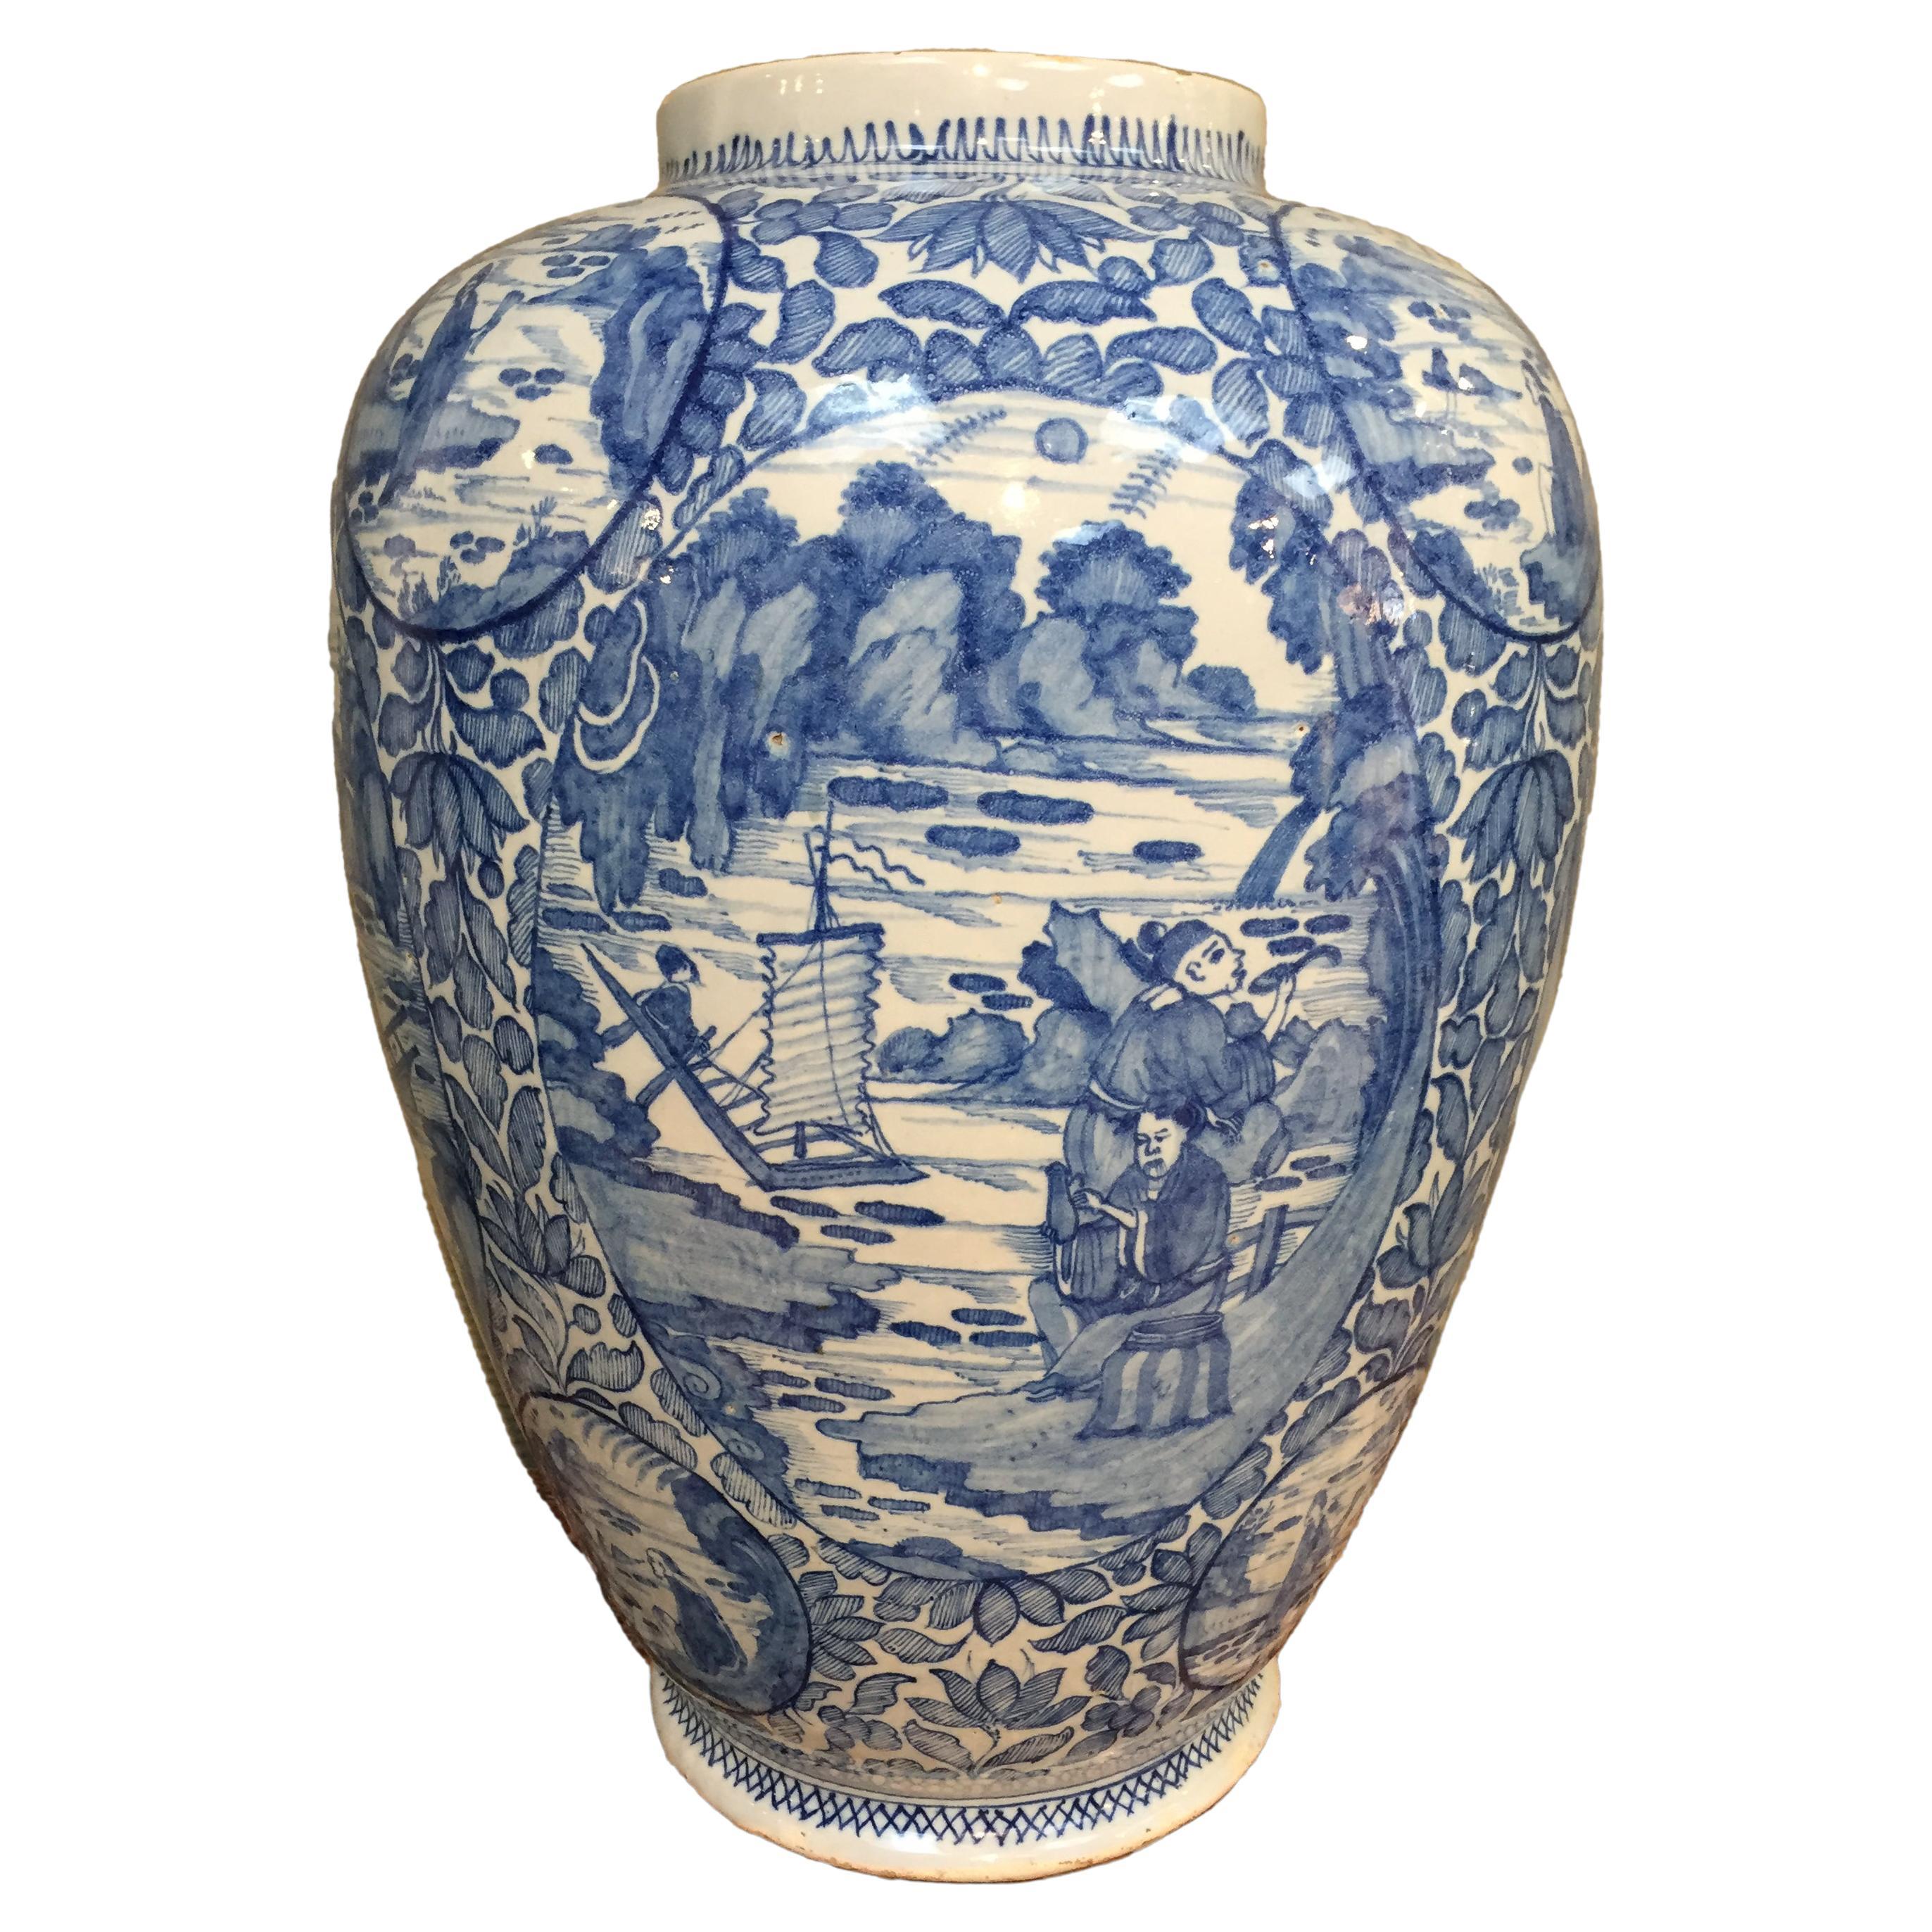 Große blau-weiße niederländische Delfter Vase in Chinoiserie, frühes 18. Jahrhundert